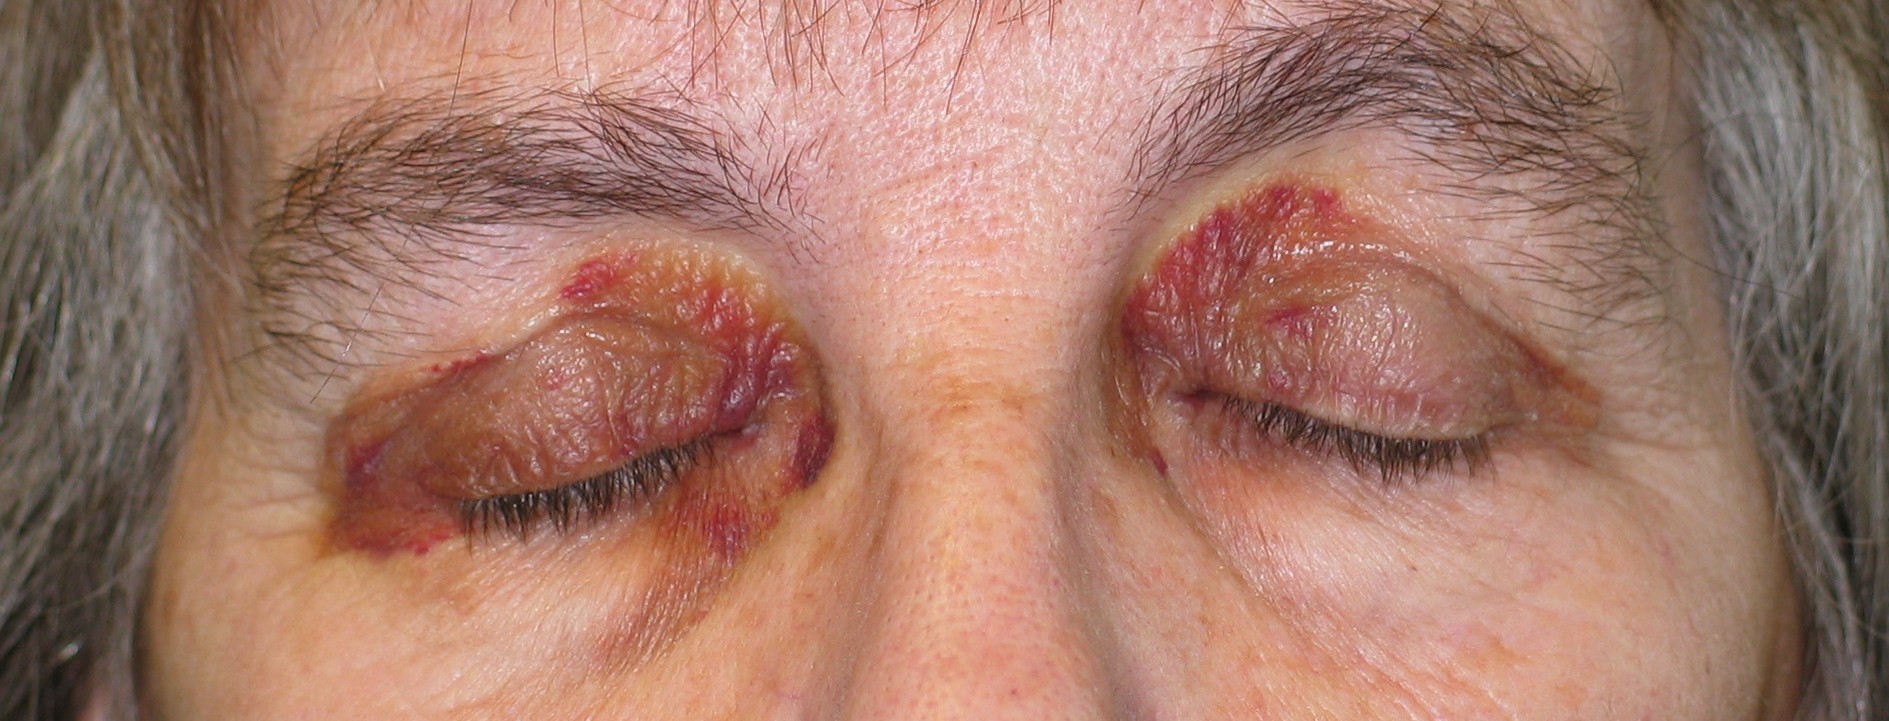 Amyloidosis: A Rare Disease